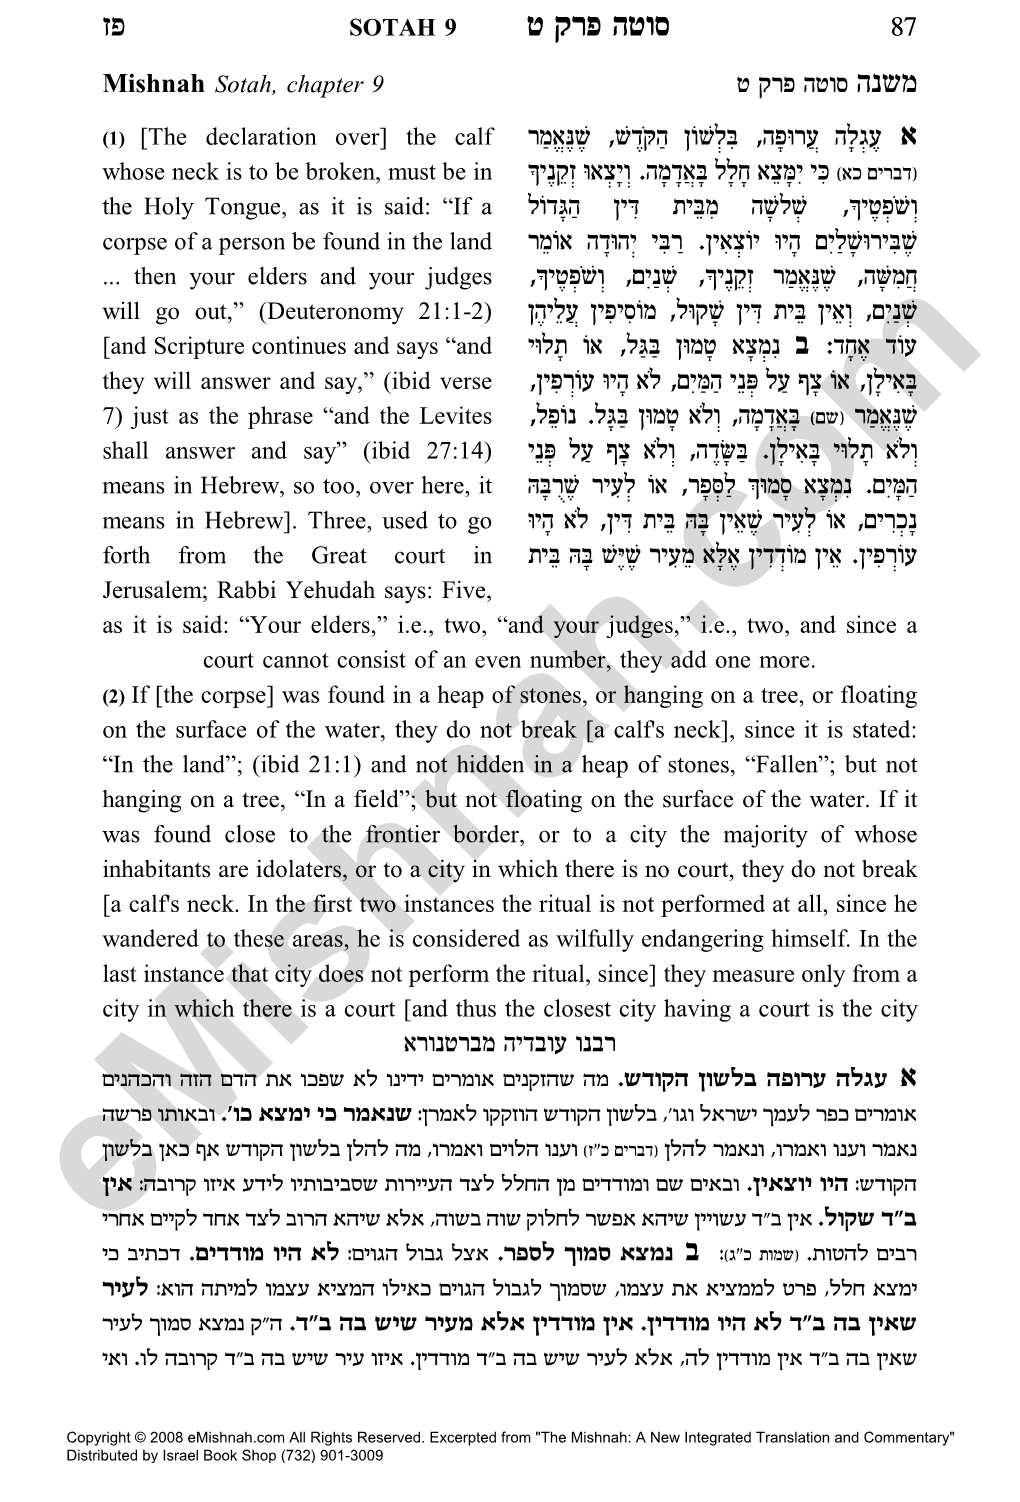 Mishnah Sotah, Chapter 9 H Wxt Dheq Dpyn